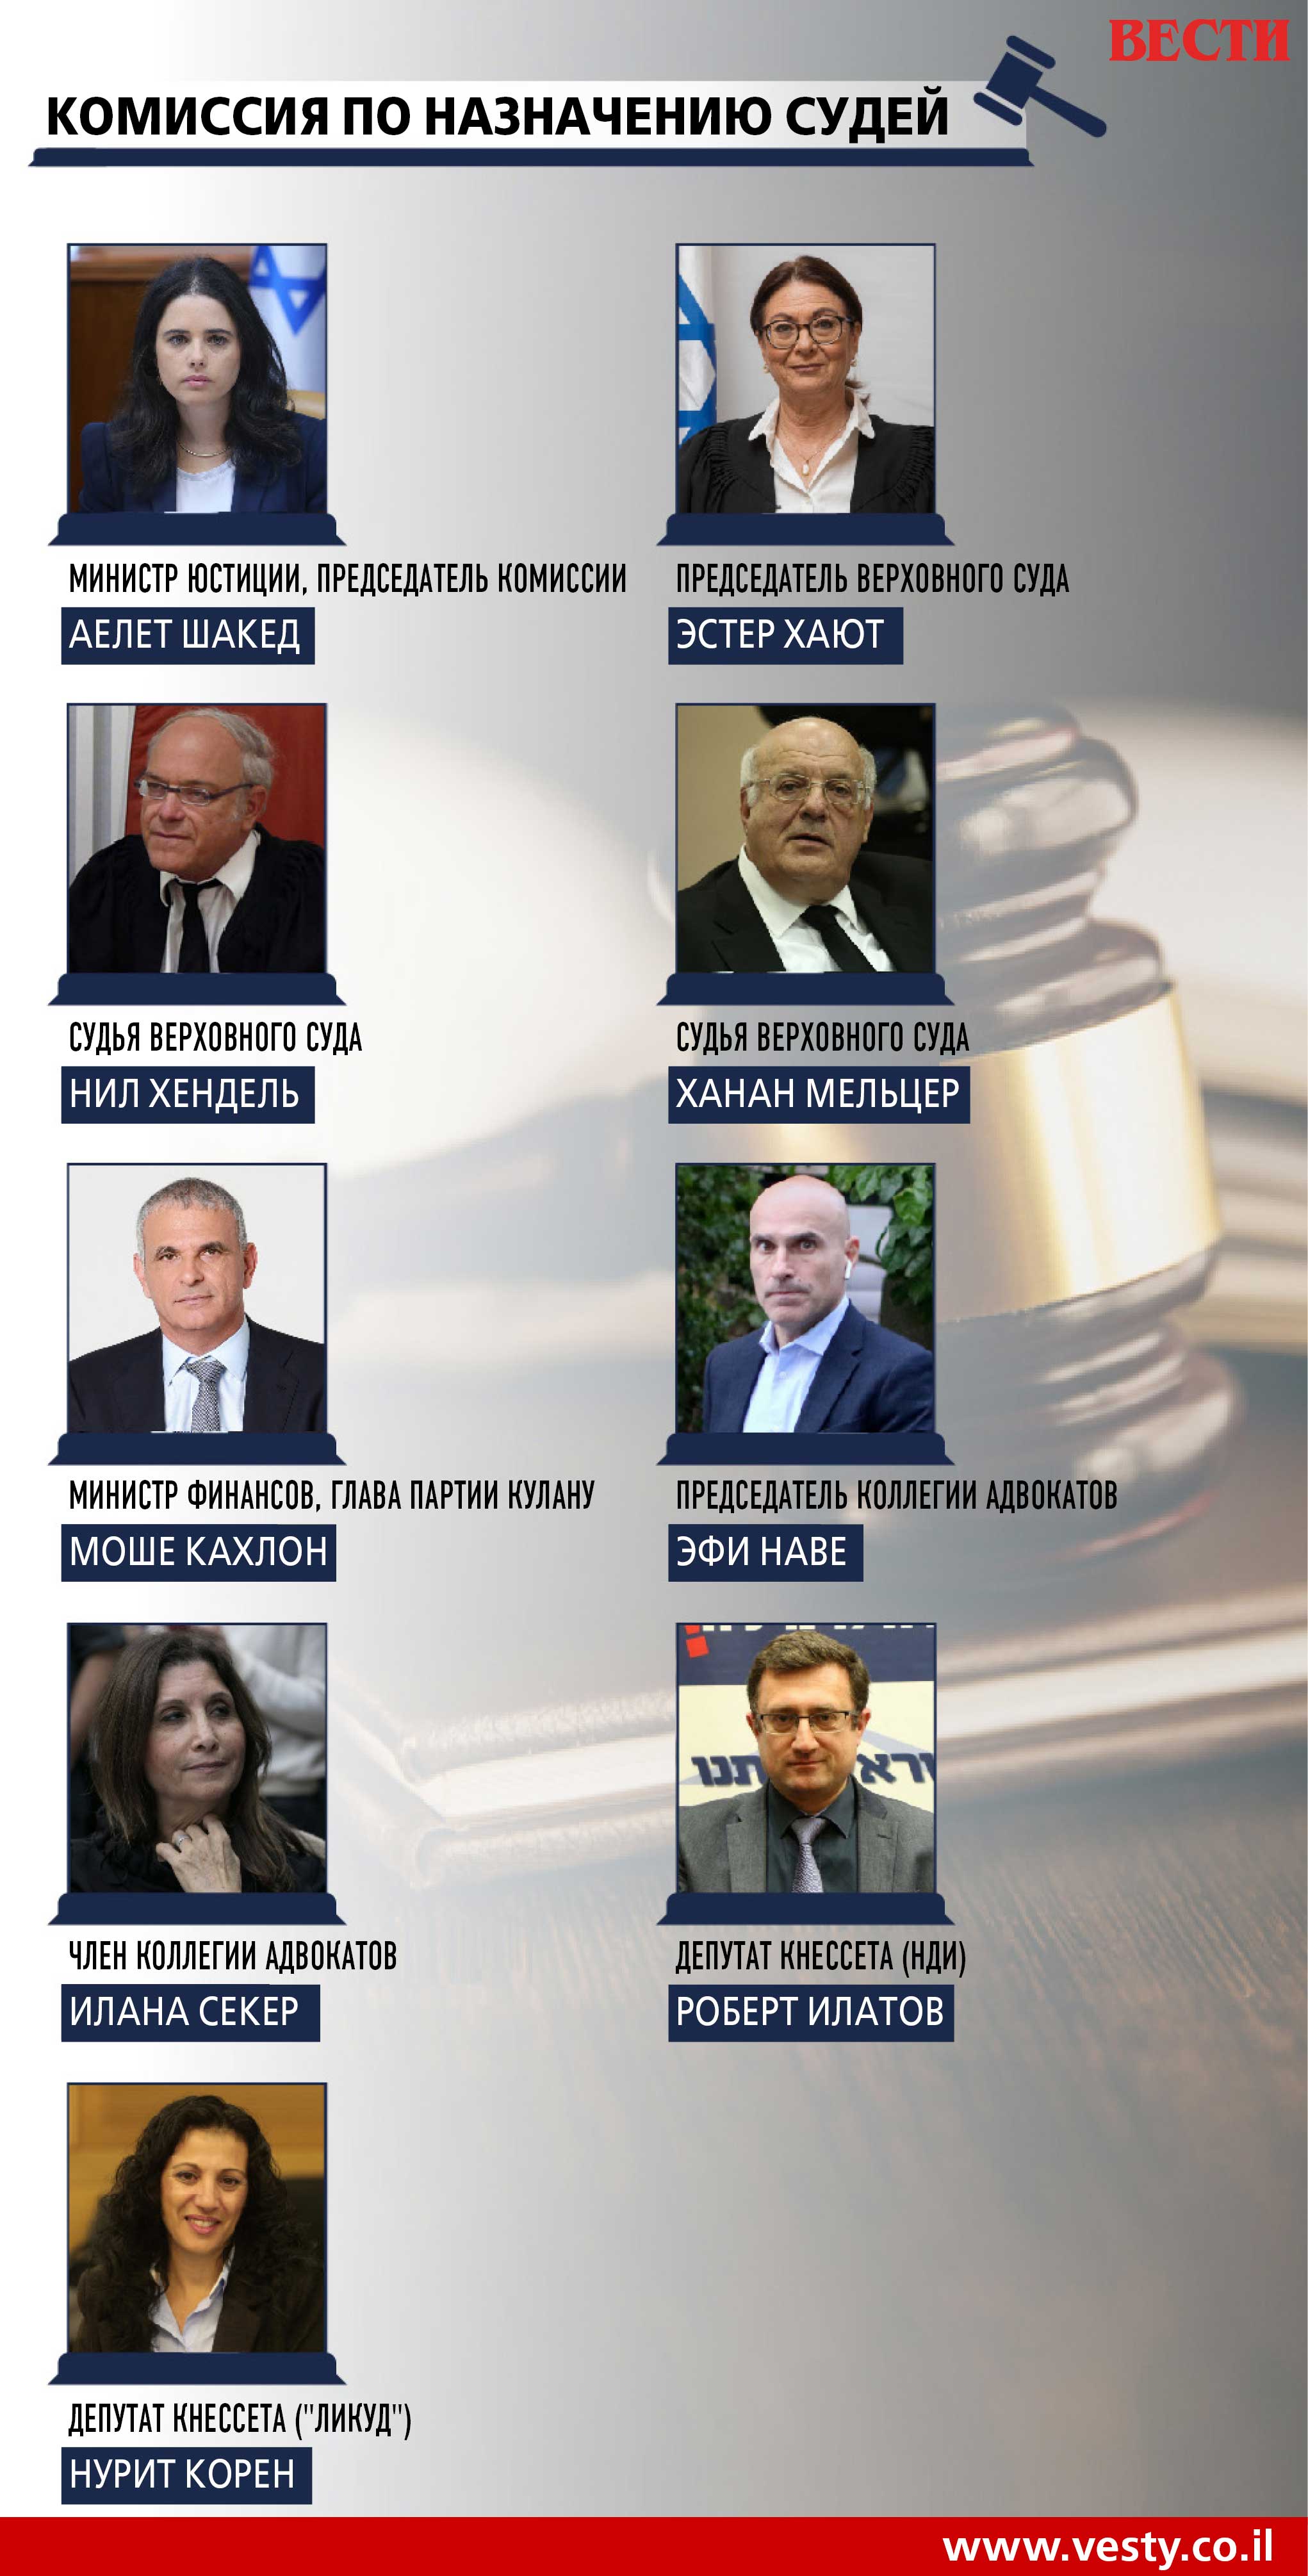 Девять человек, которые решат судьбу Нетаниягу: как работает комиссия по  выбору судей